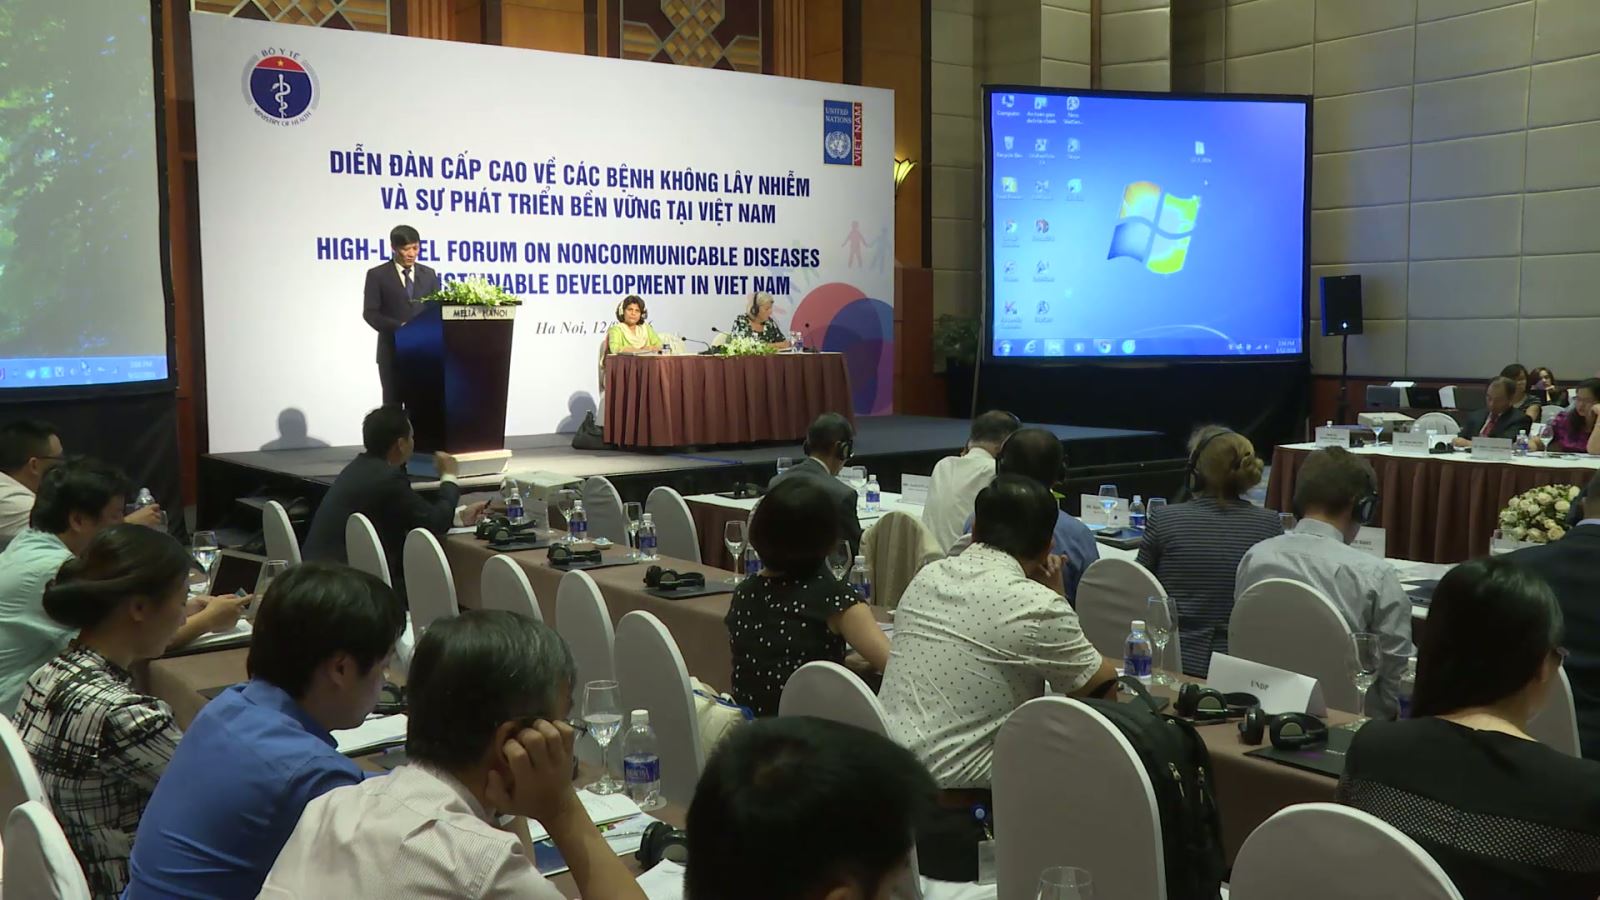 Diễn đàn cấp cao về các bệnh không lây nhiễm và phát triển bền vững tại Việt Nam